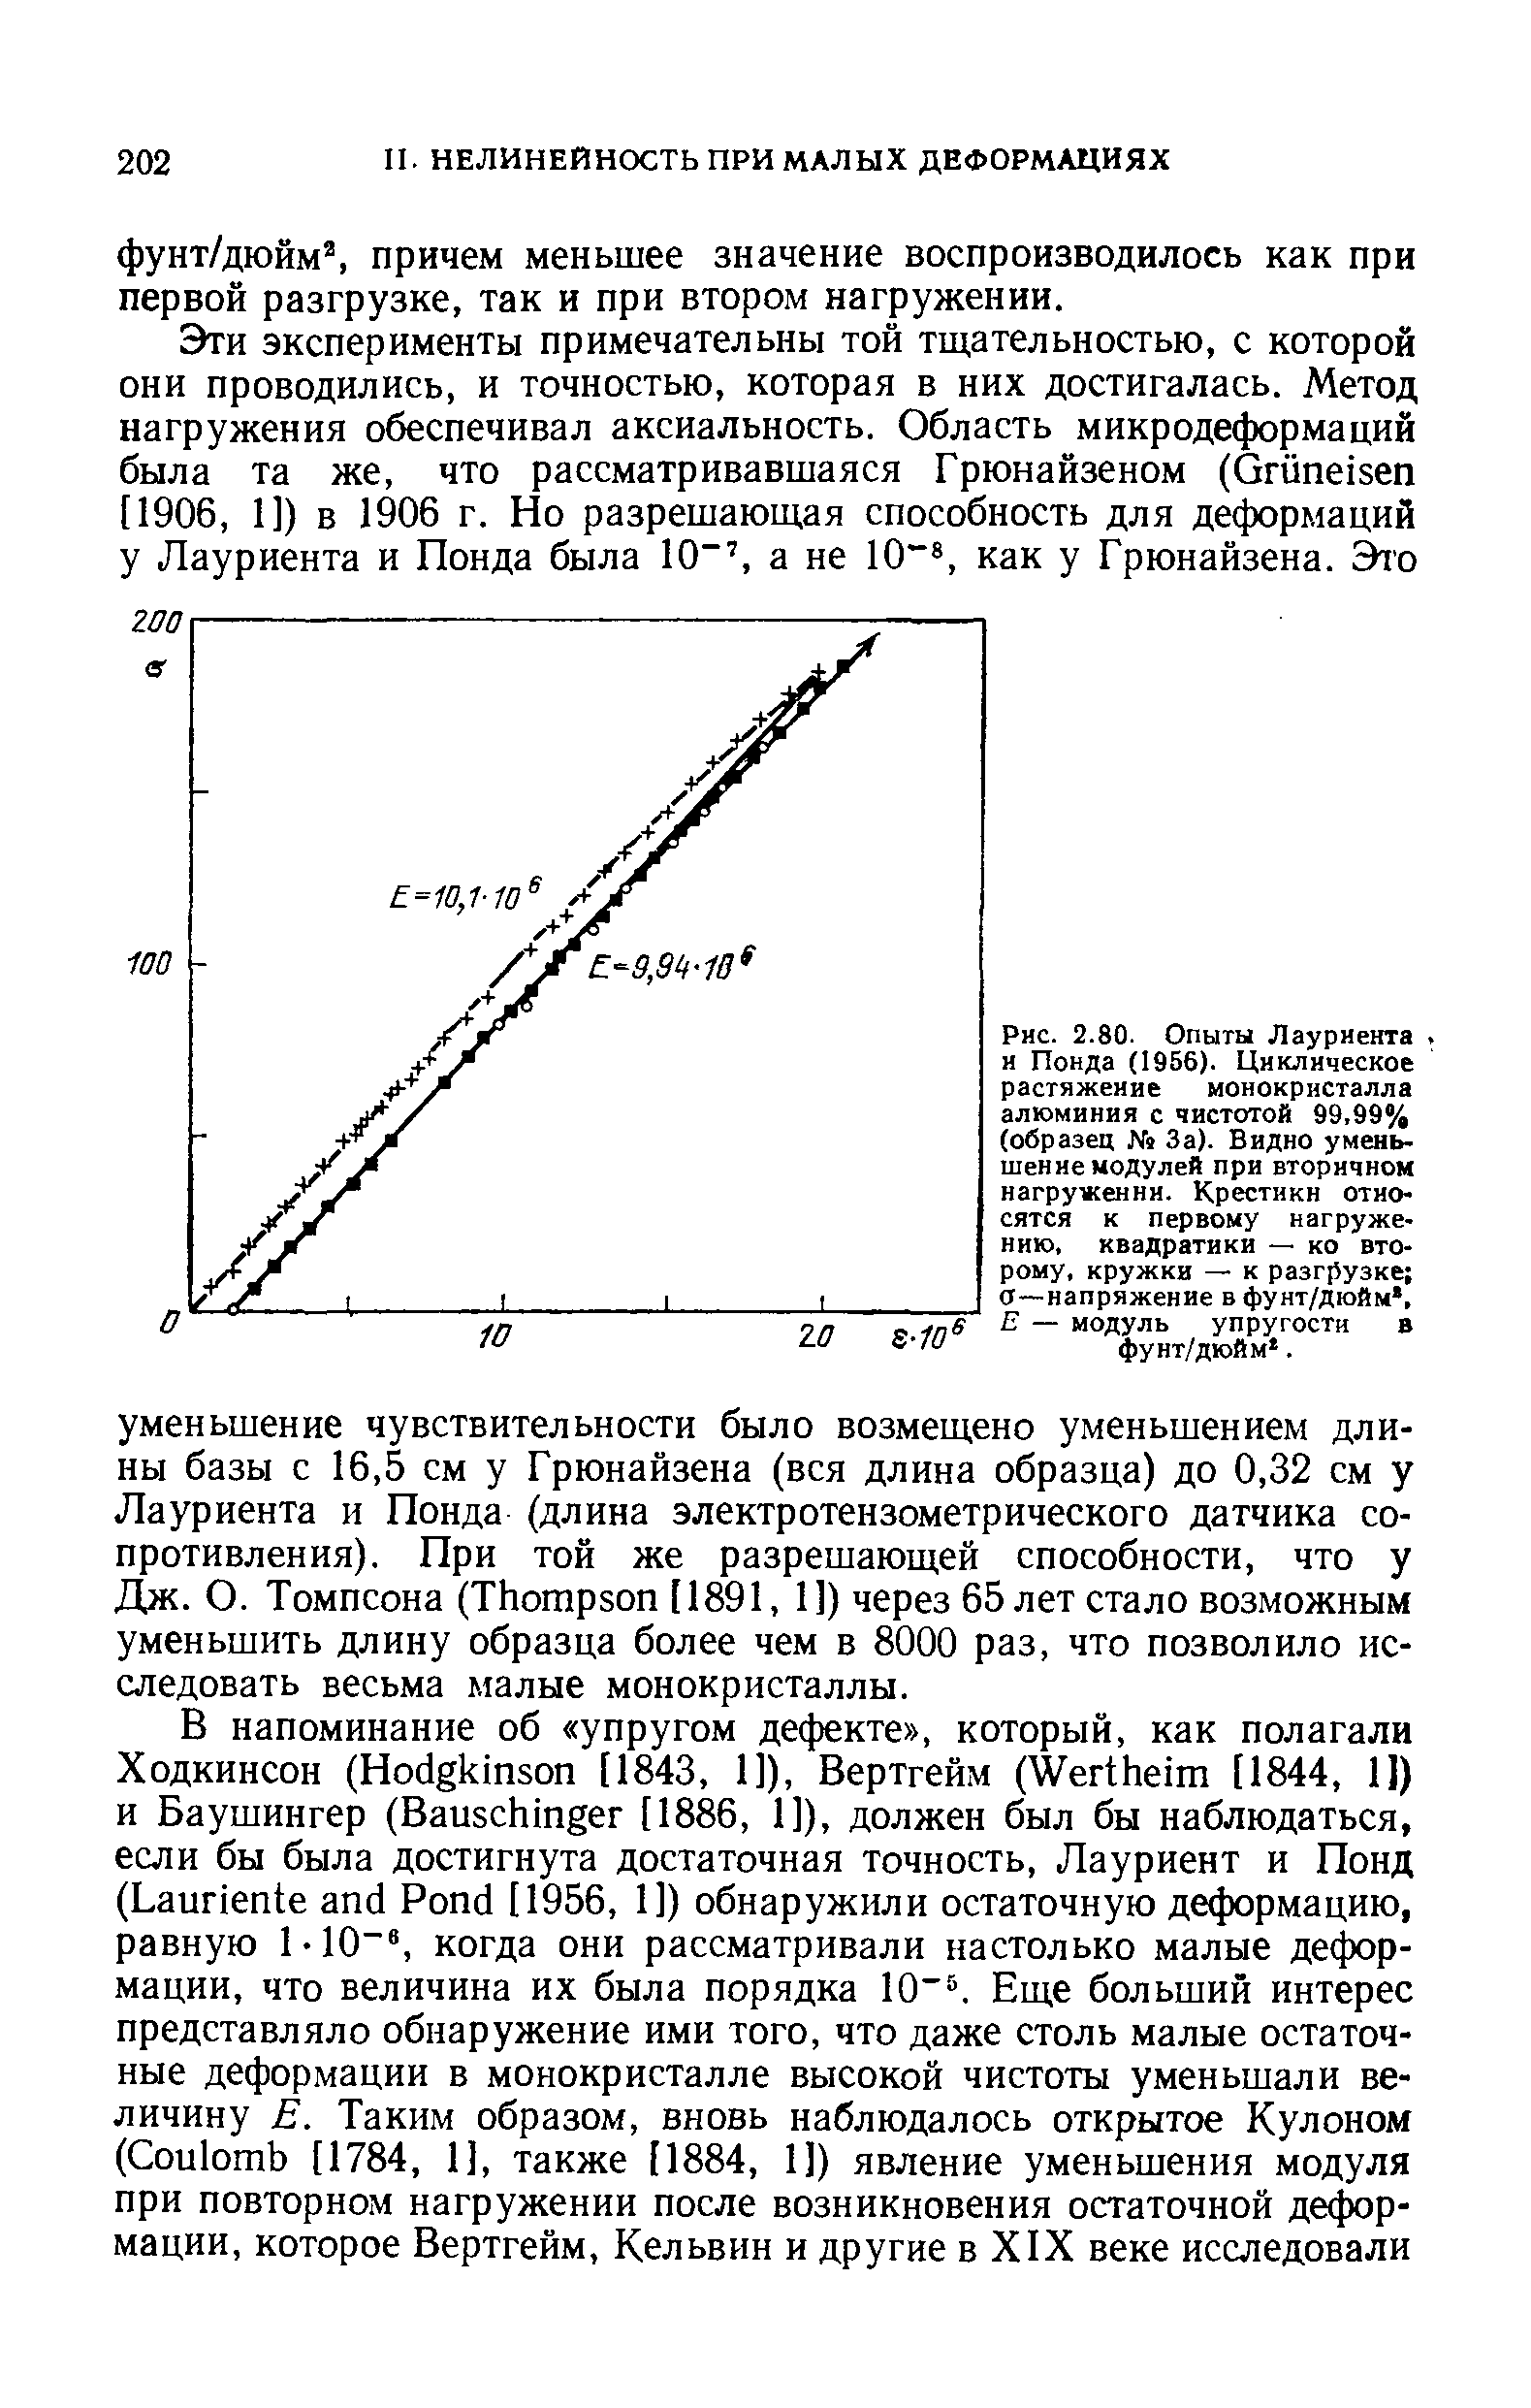 Рис. 2.80. Опыты Лауриента и Понда (1956). Циклическое растяжение монокристалла алюминия с чистотой 99,99% (образец № За). Видно уменьшение модулей при вторичном нагруткенни. Крестикн относятся к первому нагружению, квадратики — ко второму, кружки — к разгрузке а—напряжение в фунт/дюйм, Е — <a href="/info/487">модуль упругости</a> в фунт/дюйм. 
